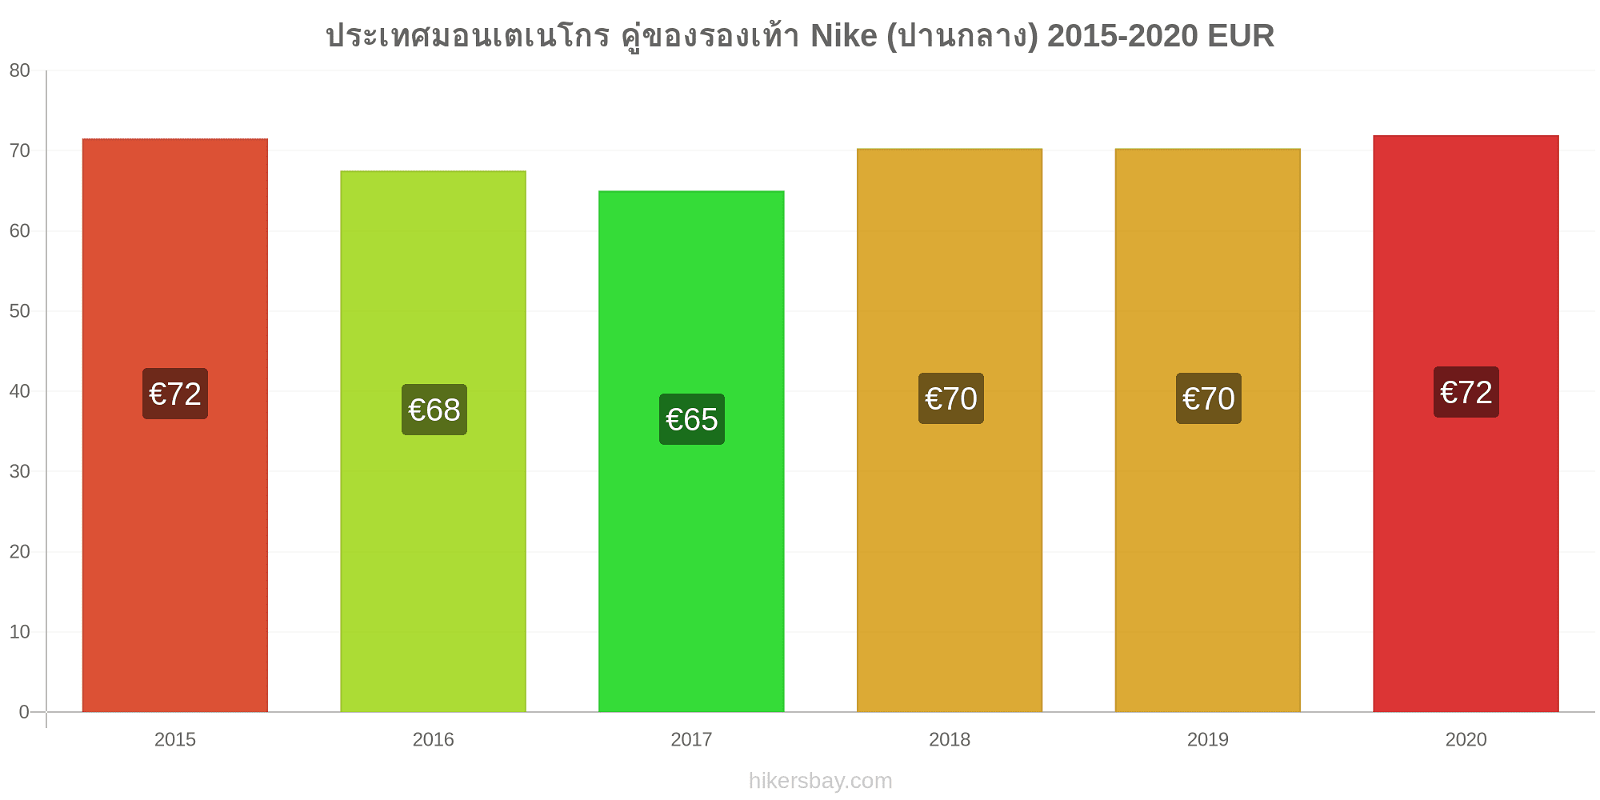 ประเทศมอนเตเนโกร การเปลี่ยนแปลงราคา คู่ของรองเท้า Nike (ปานกลาง) hikersbay.com